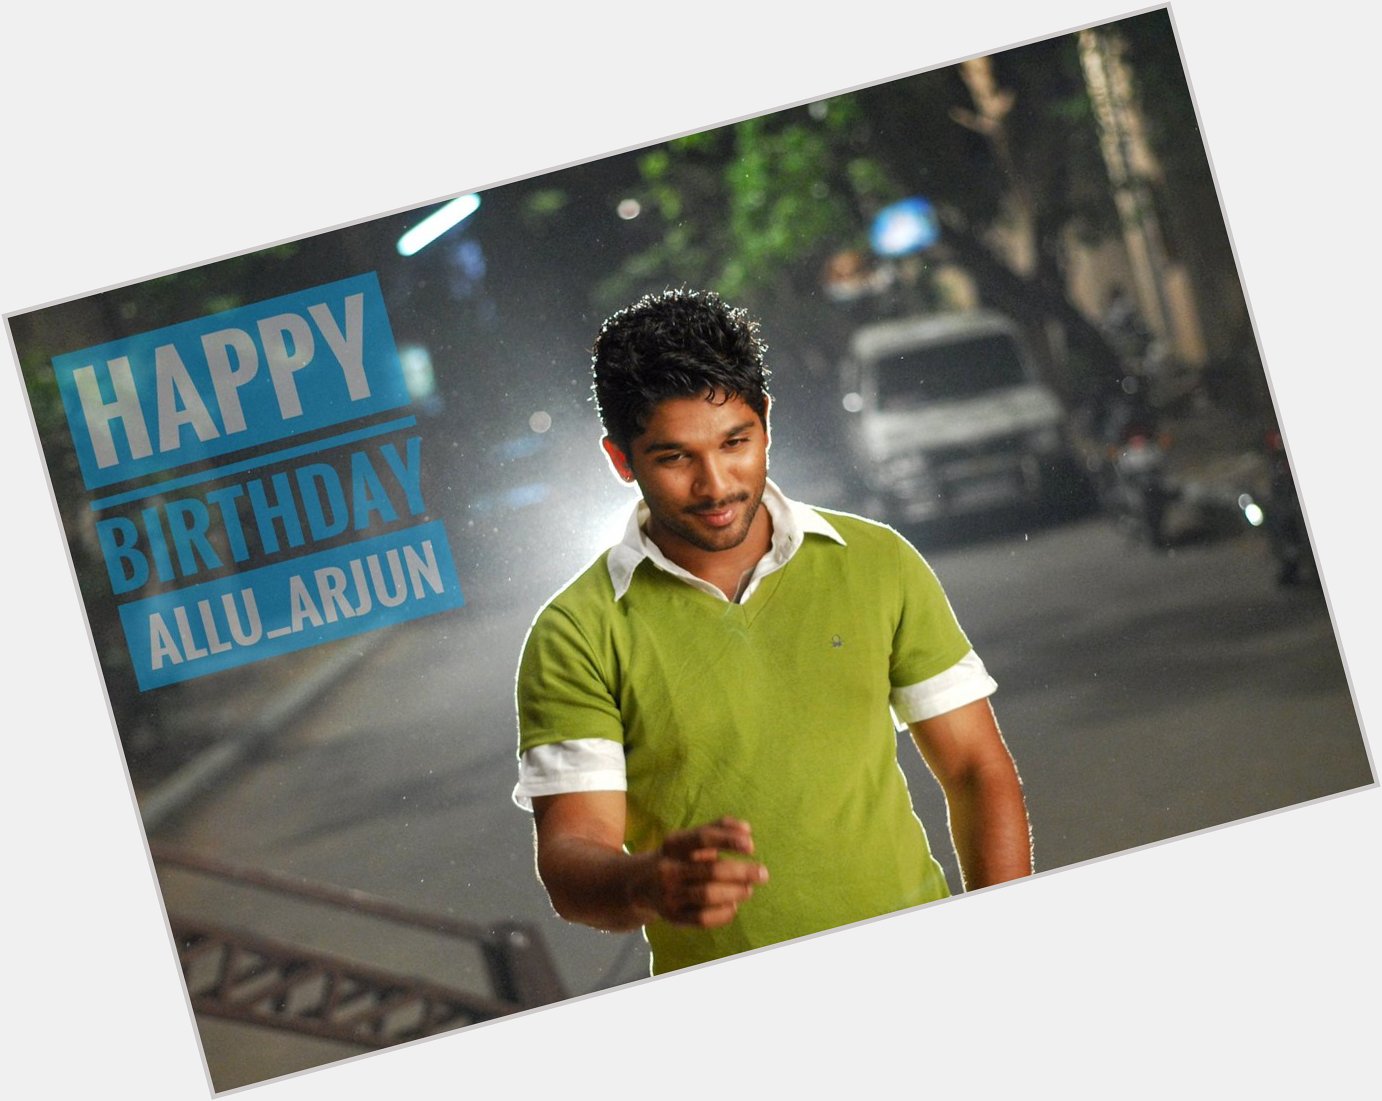 Advance happy birthday Allu Arjun 